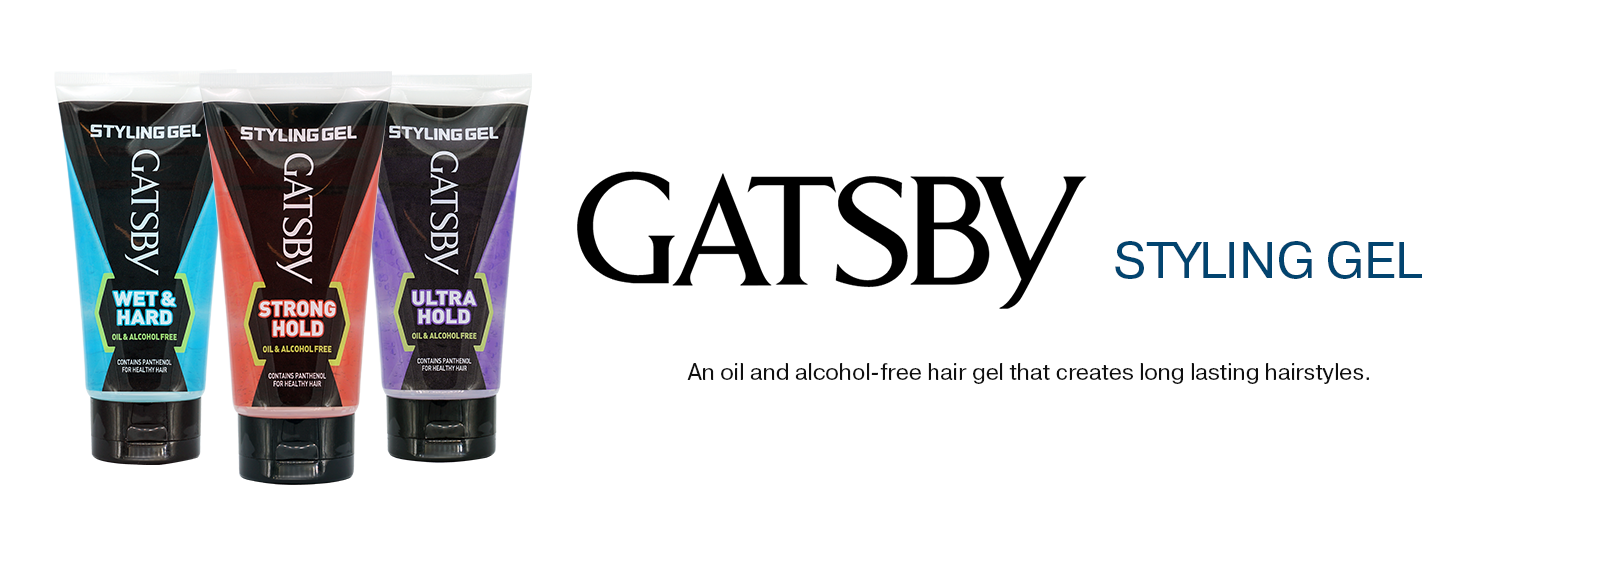 GATSBY Styling Gel banner